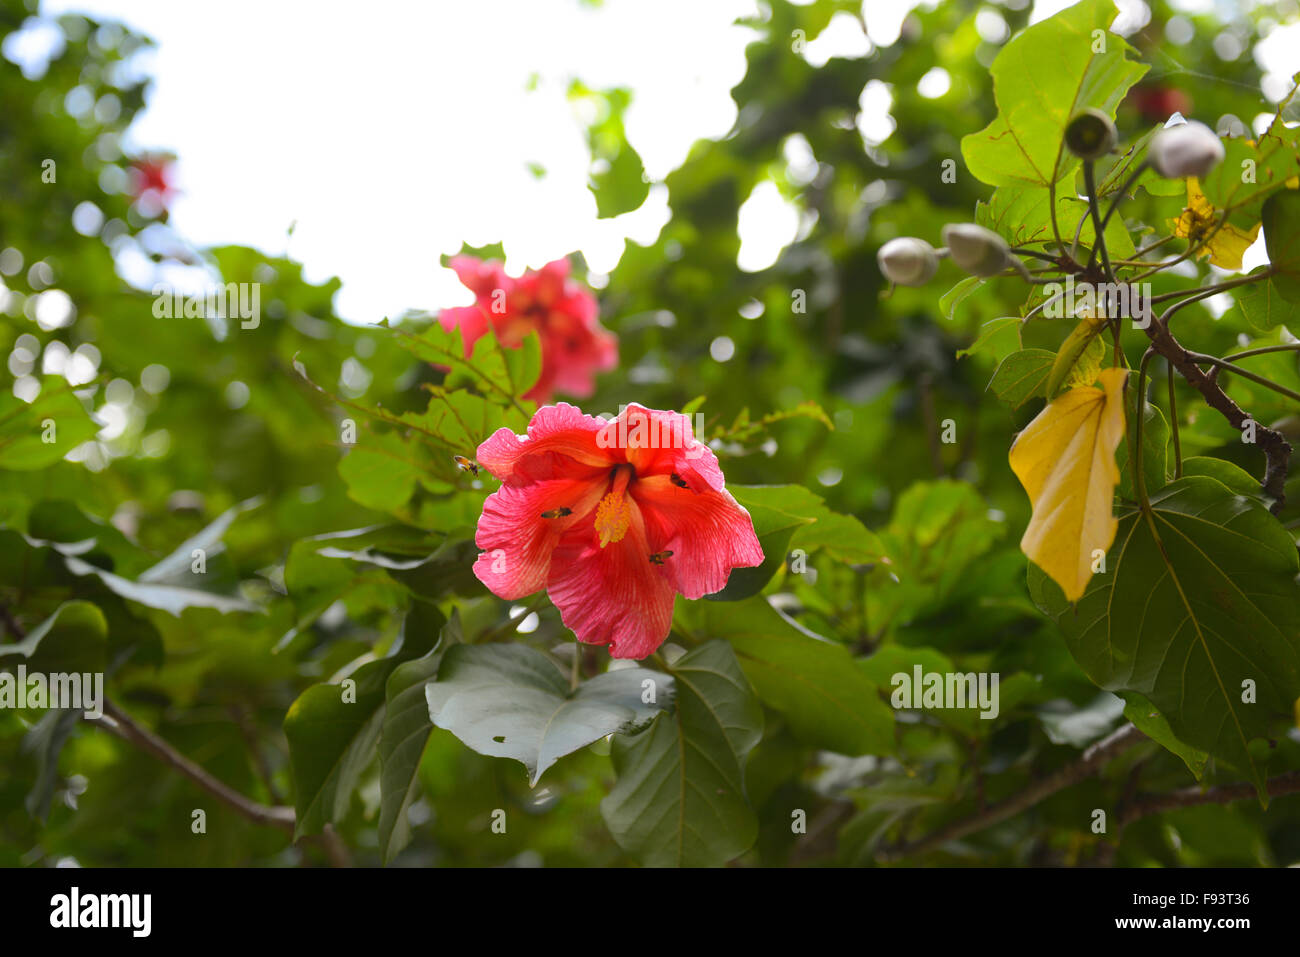 Zwei Bienen bestäuben eine Hibiskusblüte (Malvaceae). Ponce, Puerto Rico. Karibik-Insel. Territorium der USA. Stockfoto